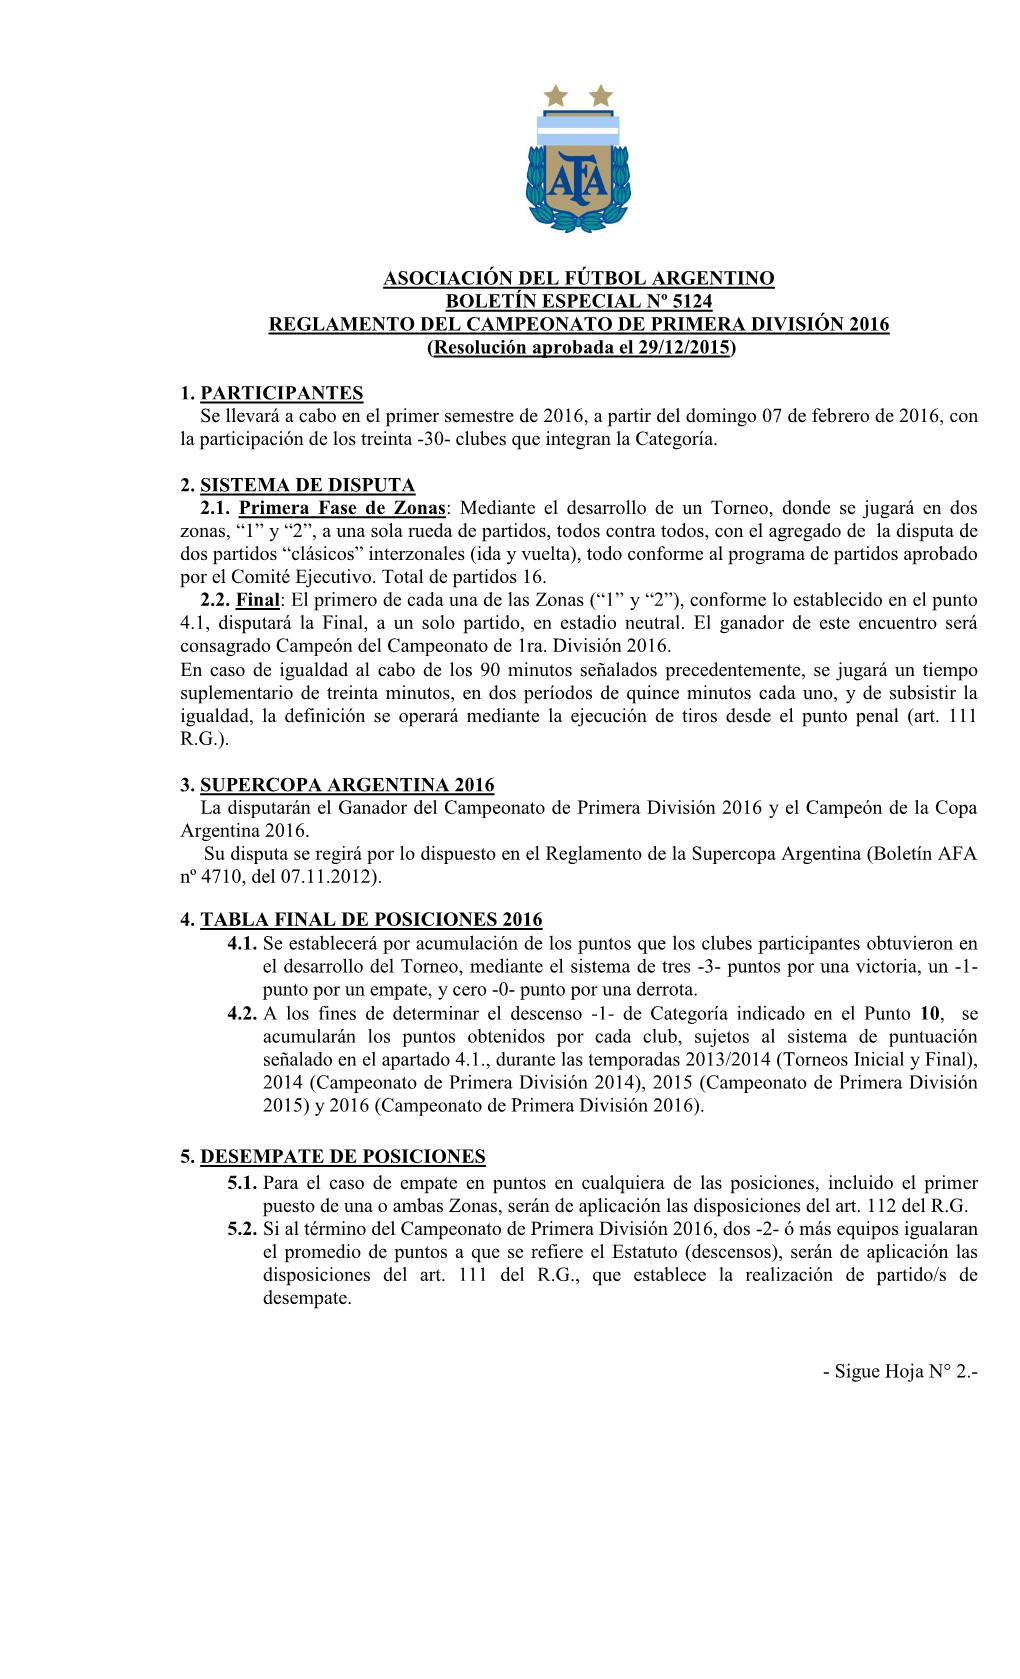 REGLAMENTO DEL CAMPEONATO DE PRIMERA DIVISIÓN 2016 (Resolución Aprobada El 29/12/2015)